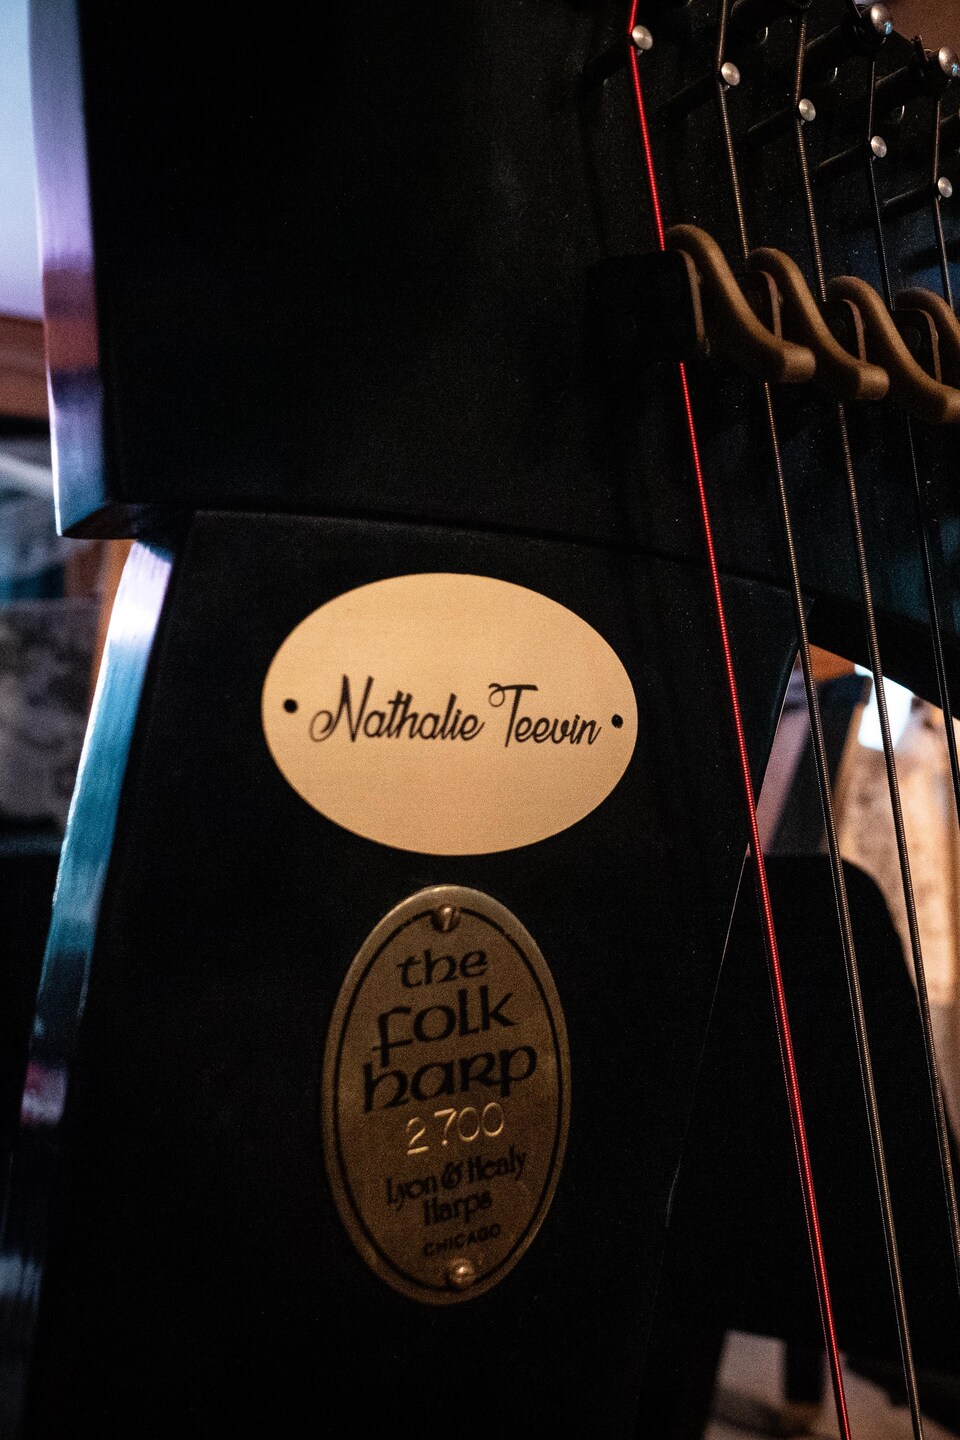 Sur le cadre d'une harpe celtique, une petite plaque dorée porte le nom de Nathalie Teevin, une harpiste de Québec.
